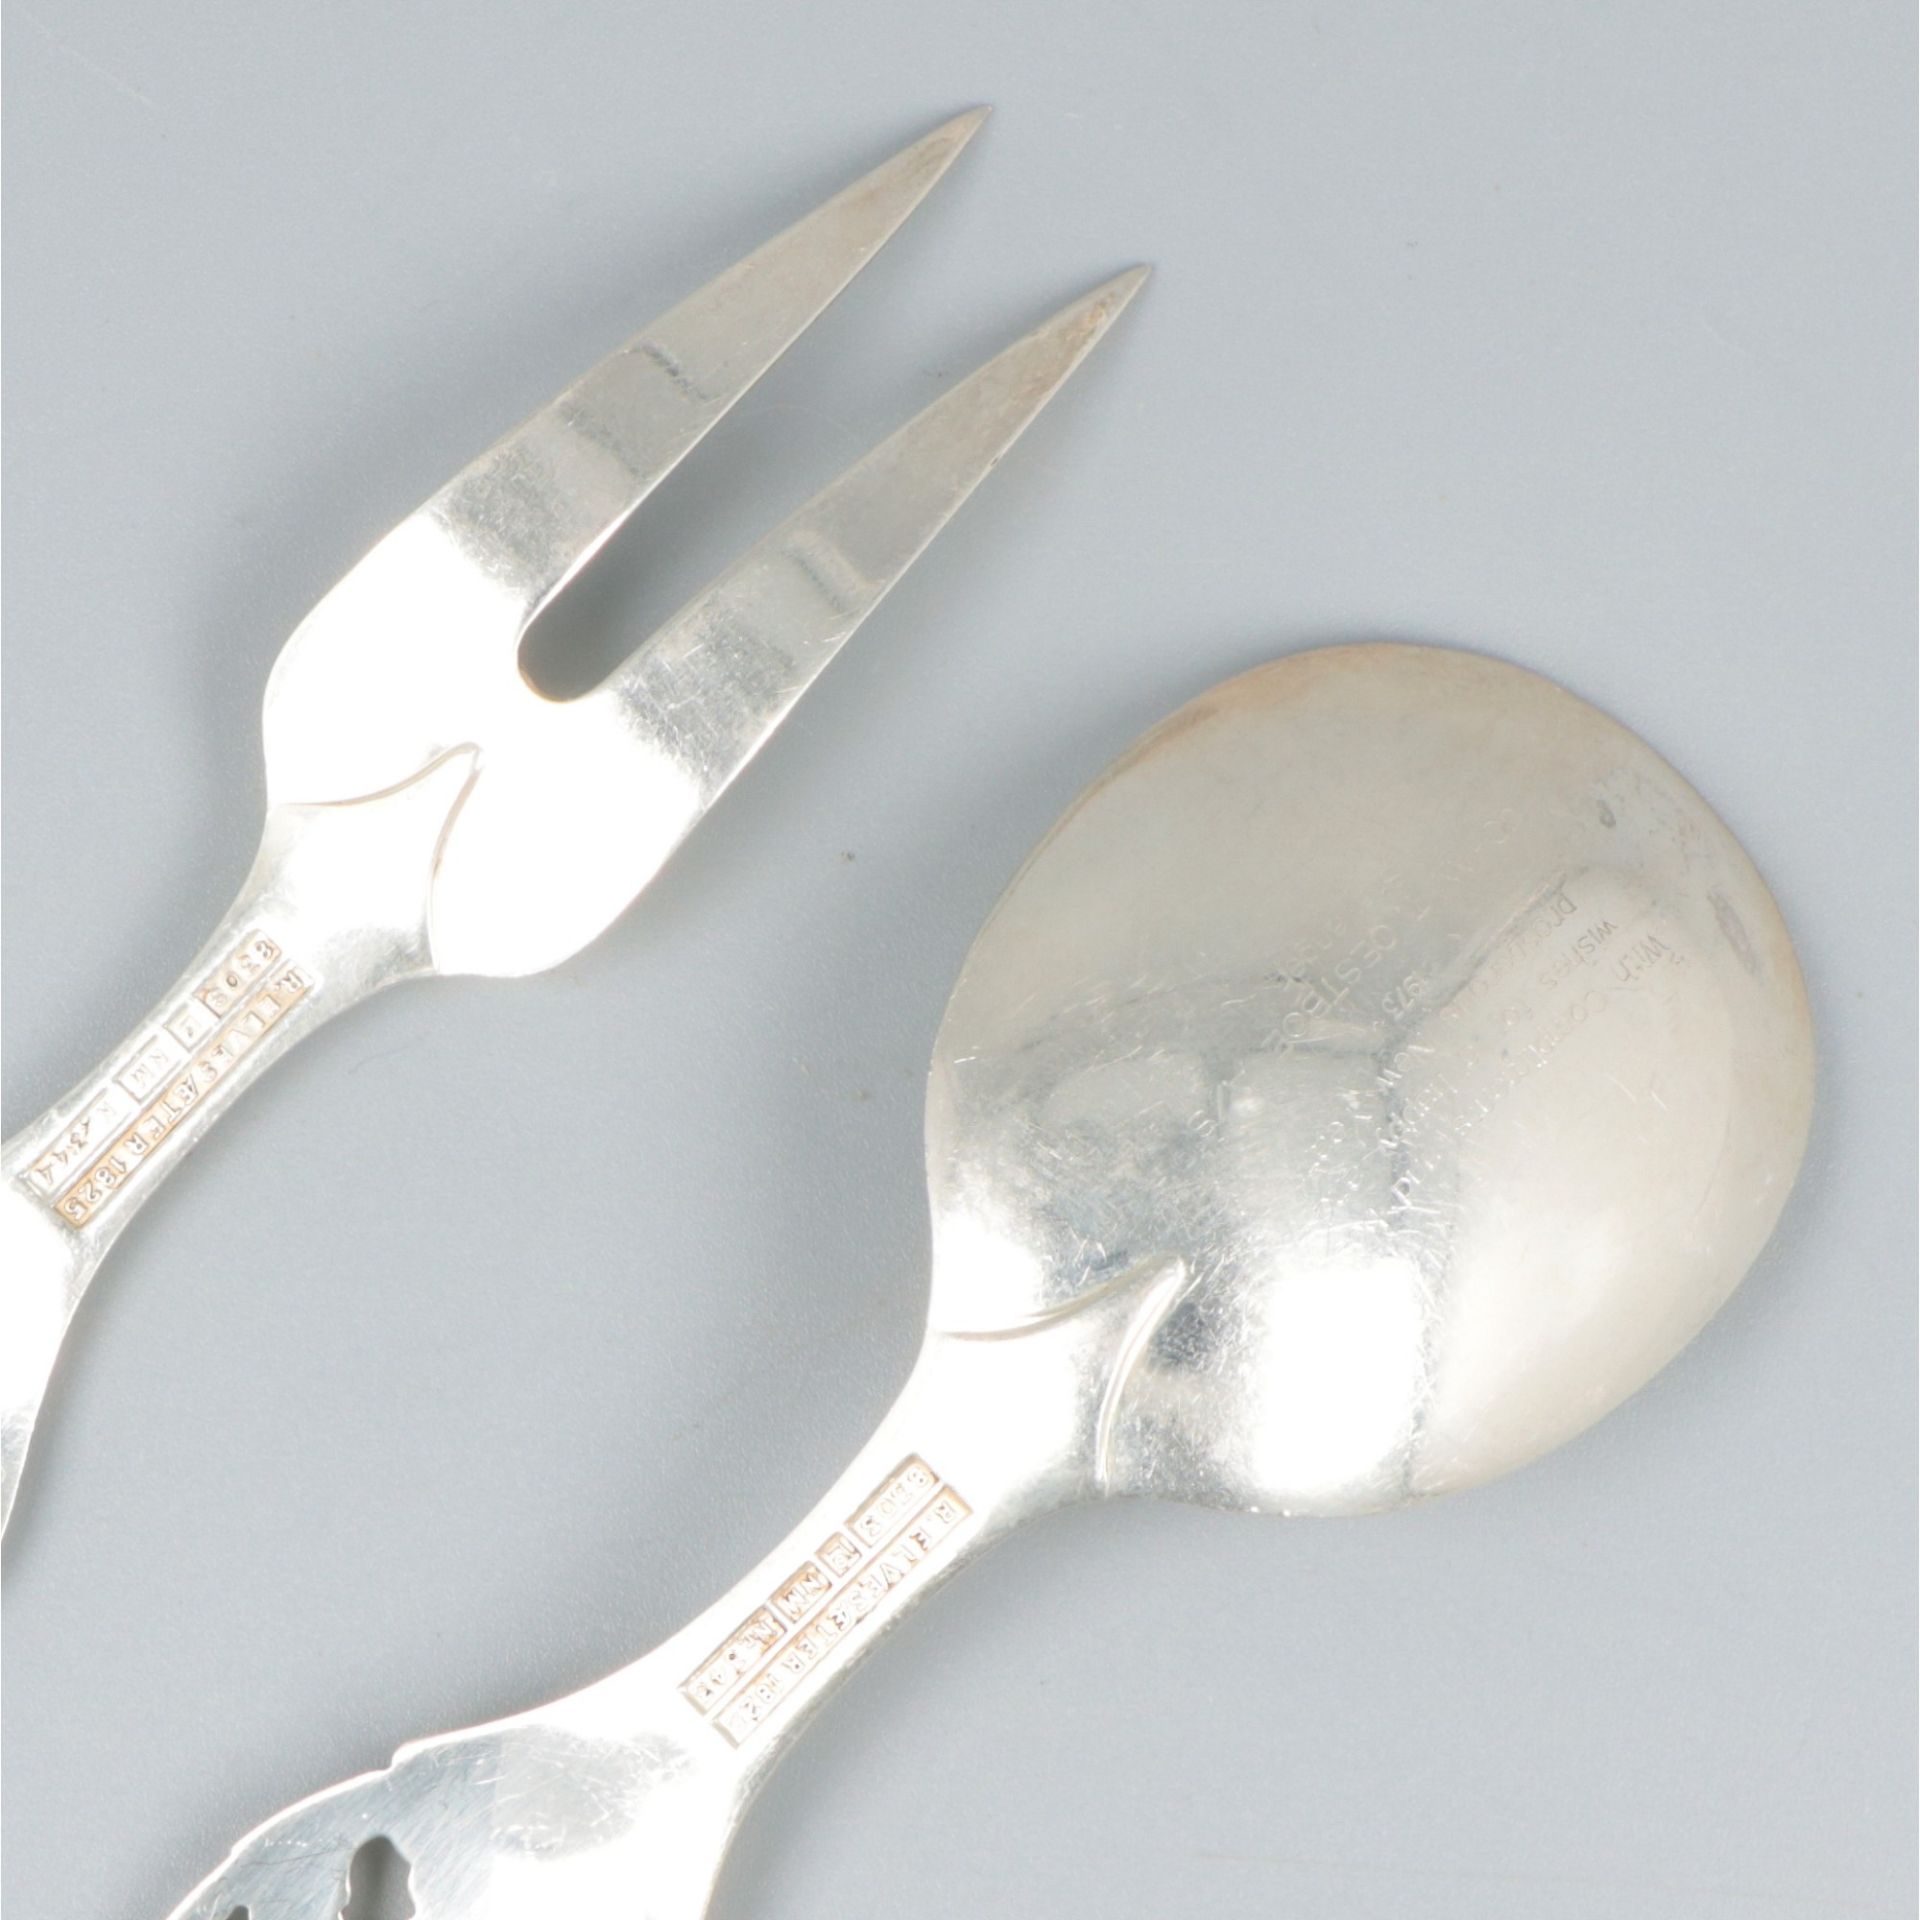 Jam spoon (Elvesæter no. 343) and serving fork (Elvesæter no. 344) (design by Brødrene Lohne, 1954)  - Image 4 of 7